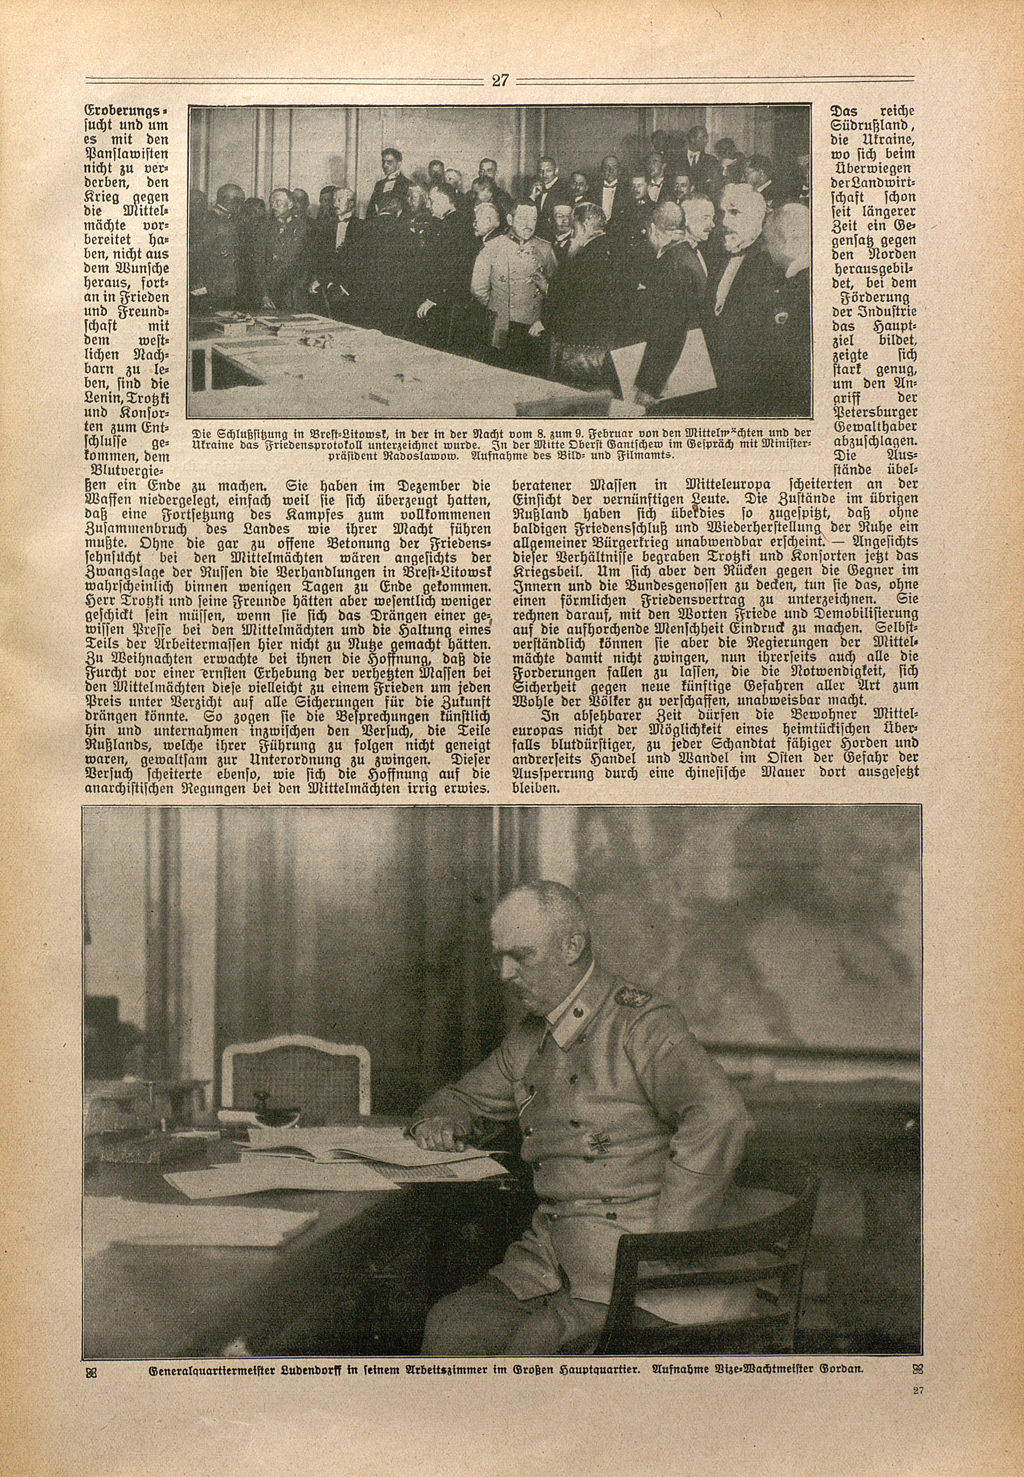 Zwei Pressefotos auf dieser Seite zeigen die Delegationen am letzten Verhandlungstag in Brest-Litowsk oben und unten General Erich Ludendorff im Hauptquartier der Obersten Heeresleitung.